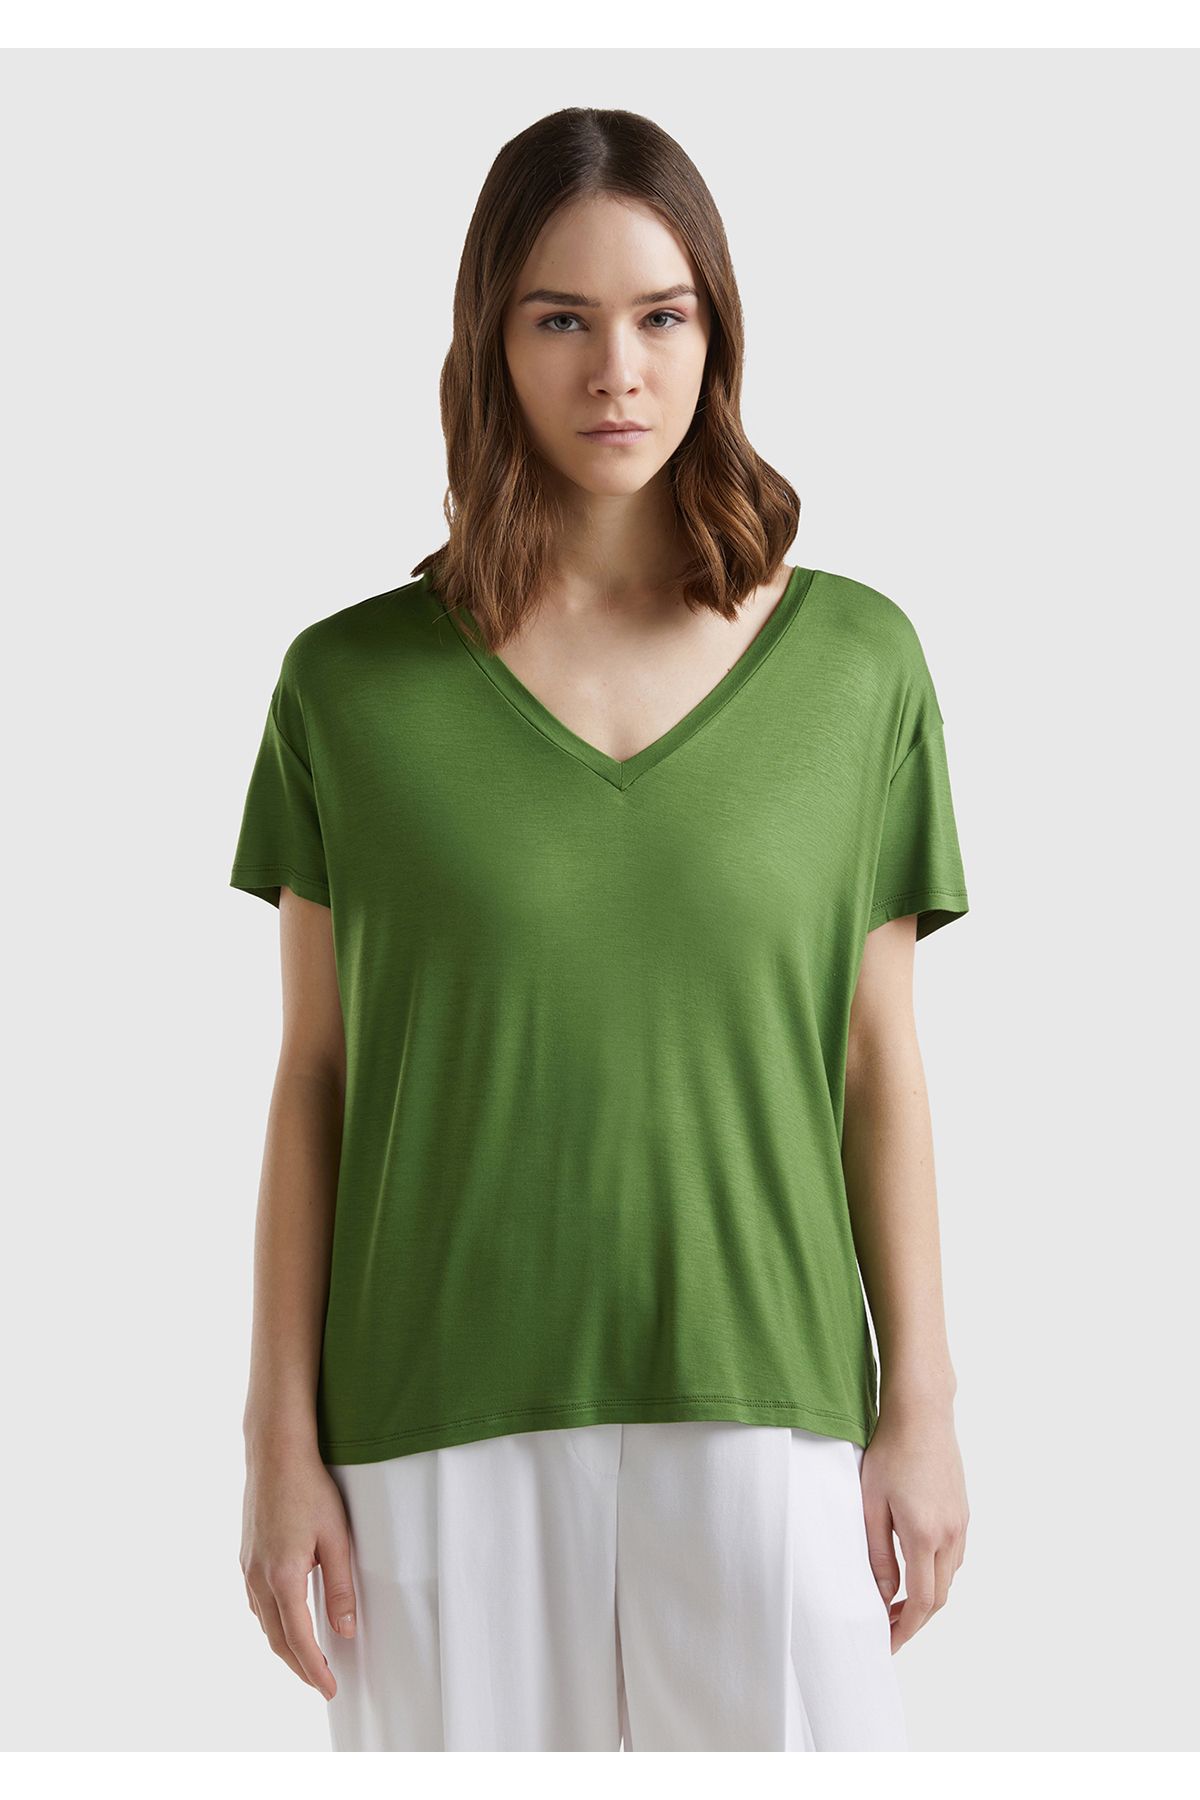 United Colors of Benetton Kadın Soluk Yeşil Viskoz Karışımlı Geniş V Yaka Basic T-Shirt